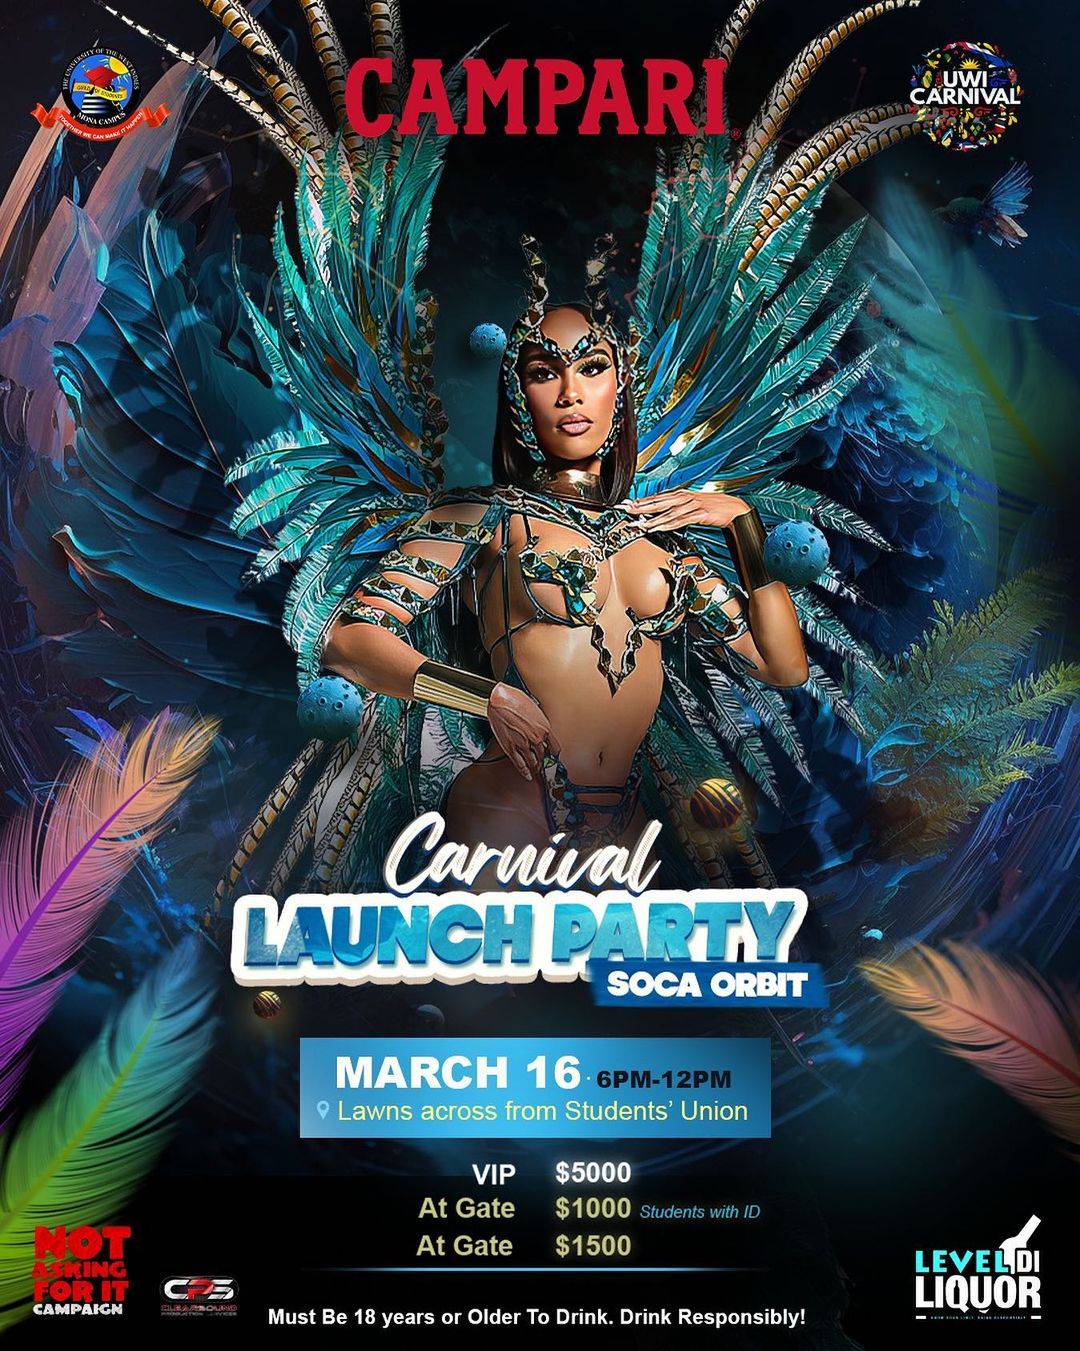 UWI Carnival Launch Party Soca Orbit